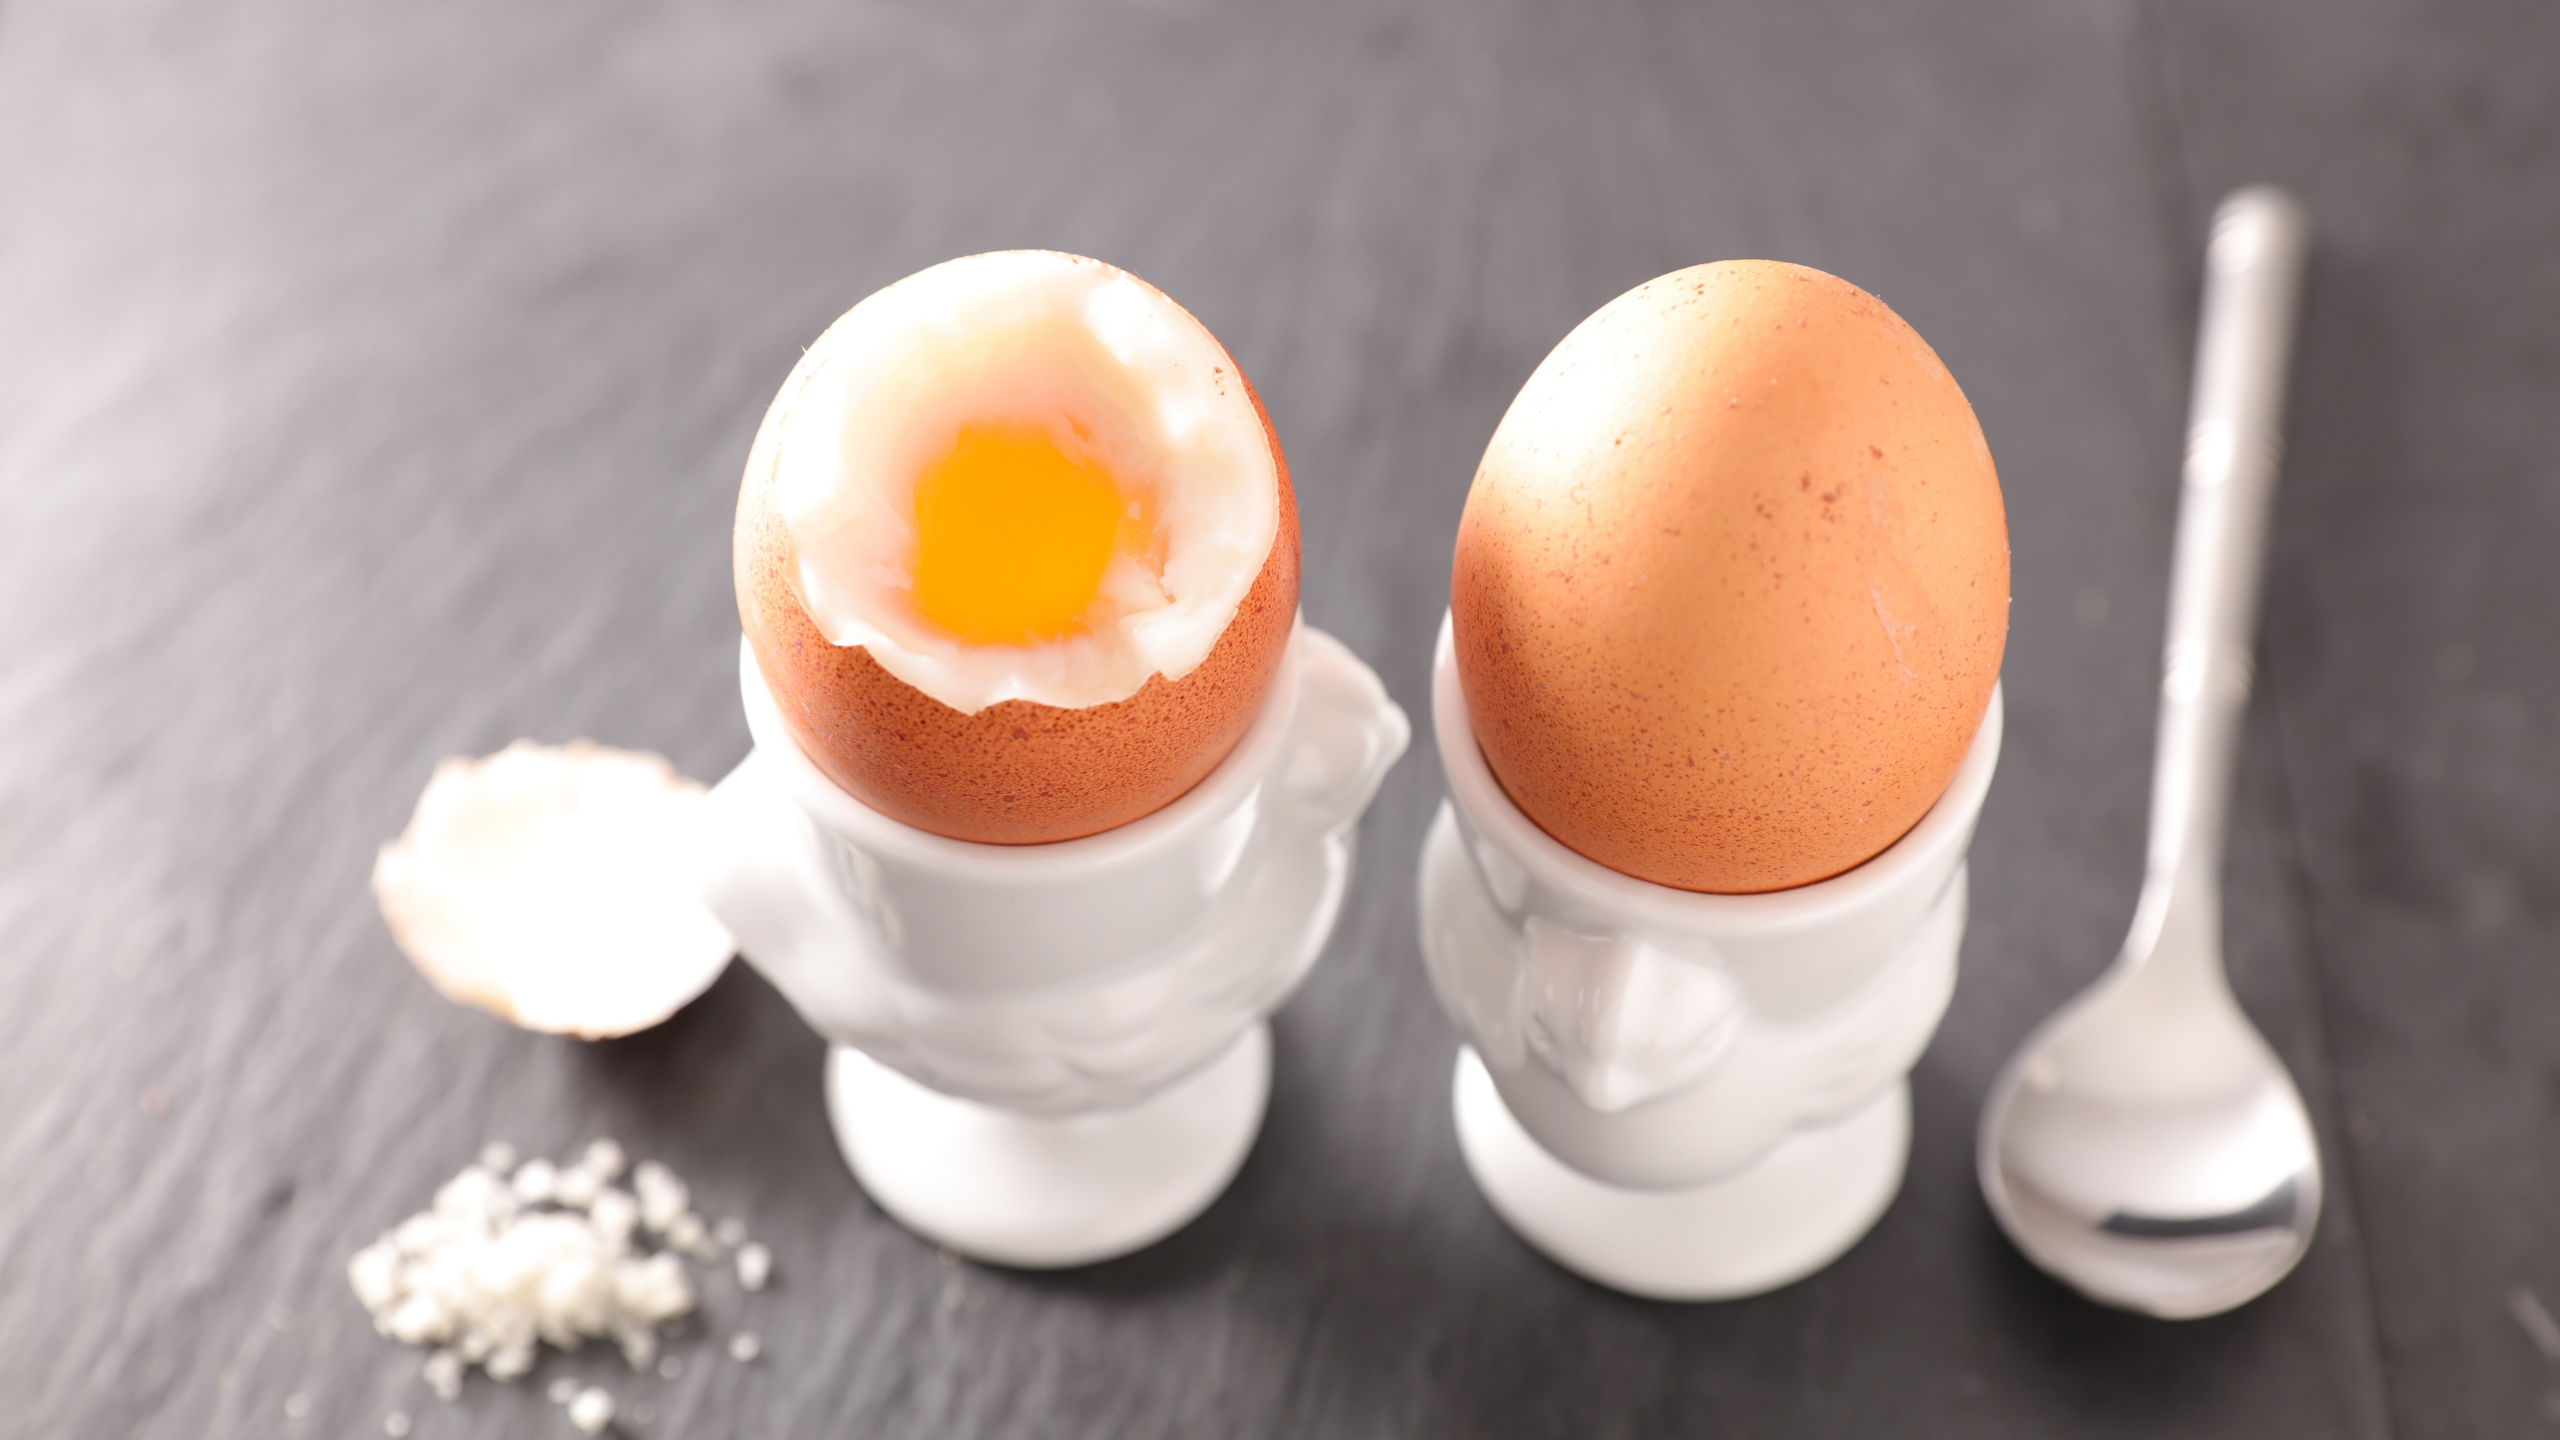 gebrek Geurig Associëren Are boiled eggs good before a run?